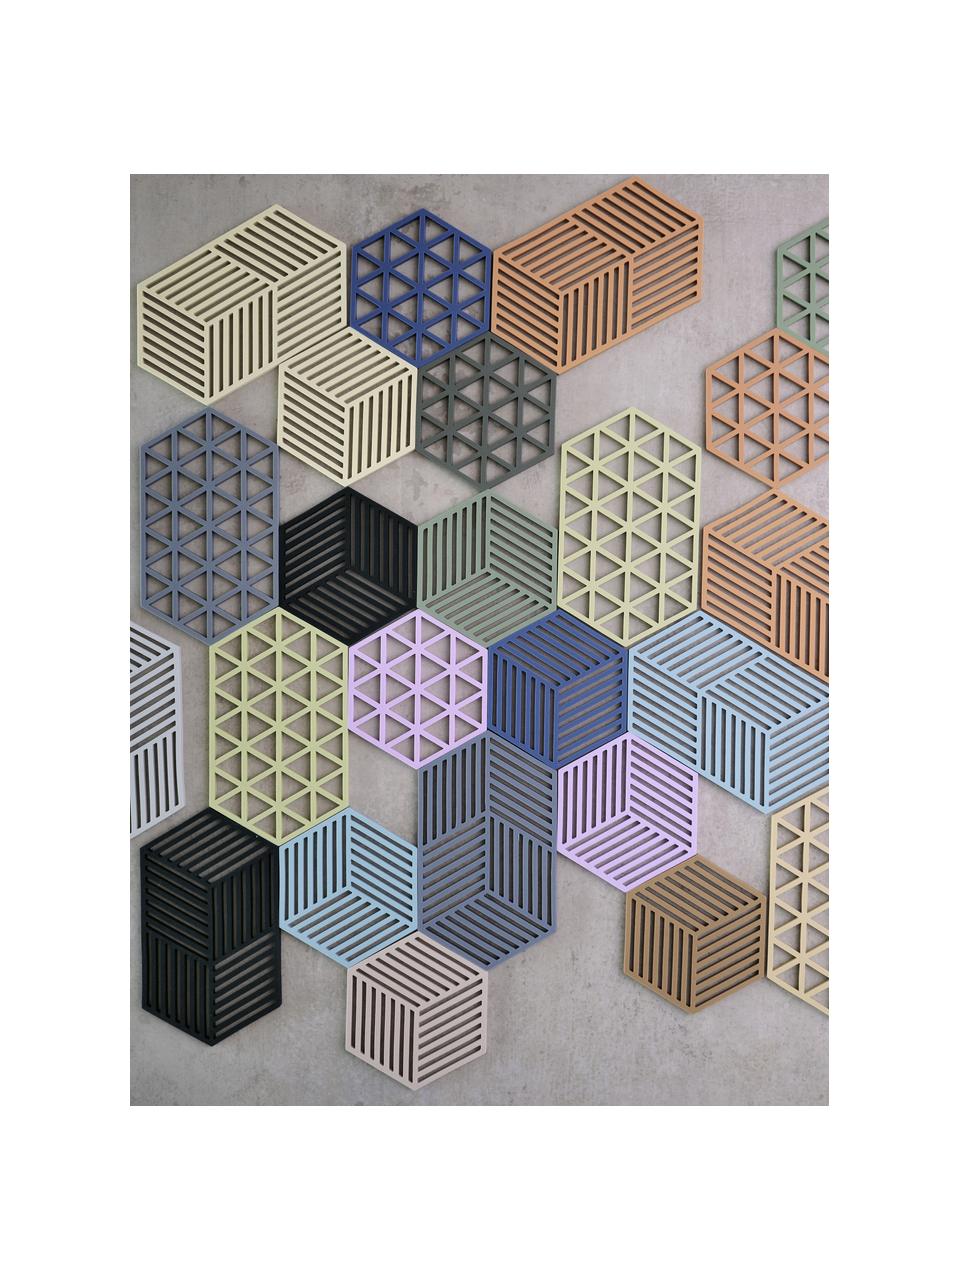 Silicone onderzetter Hexagon, Siliconen, Lichtbeige, B 14 x L 16 cm